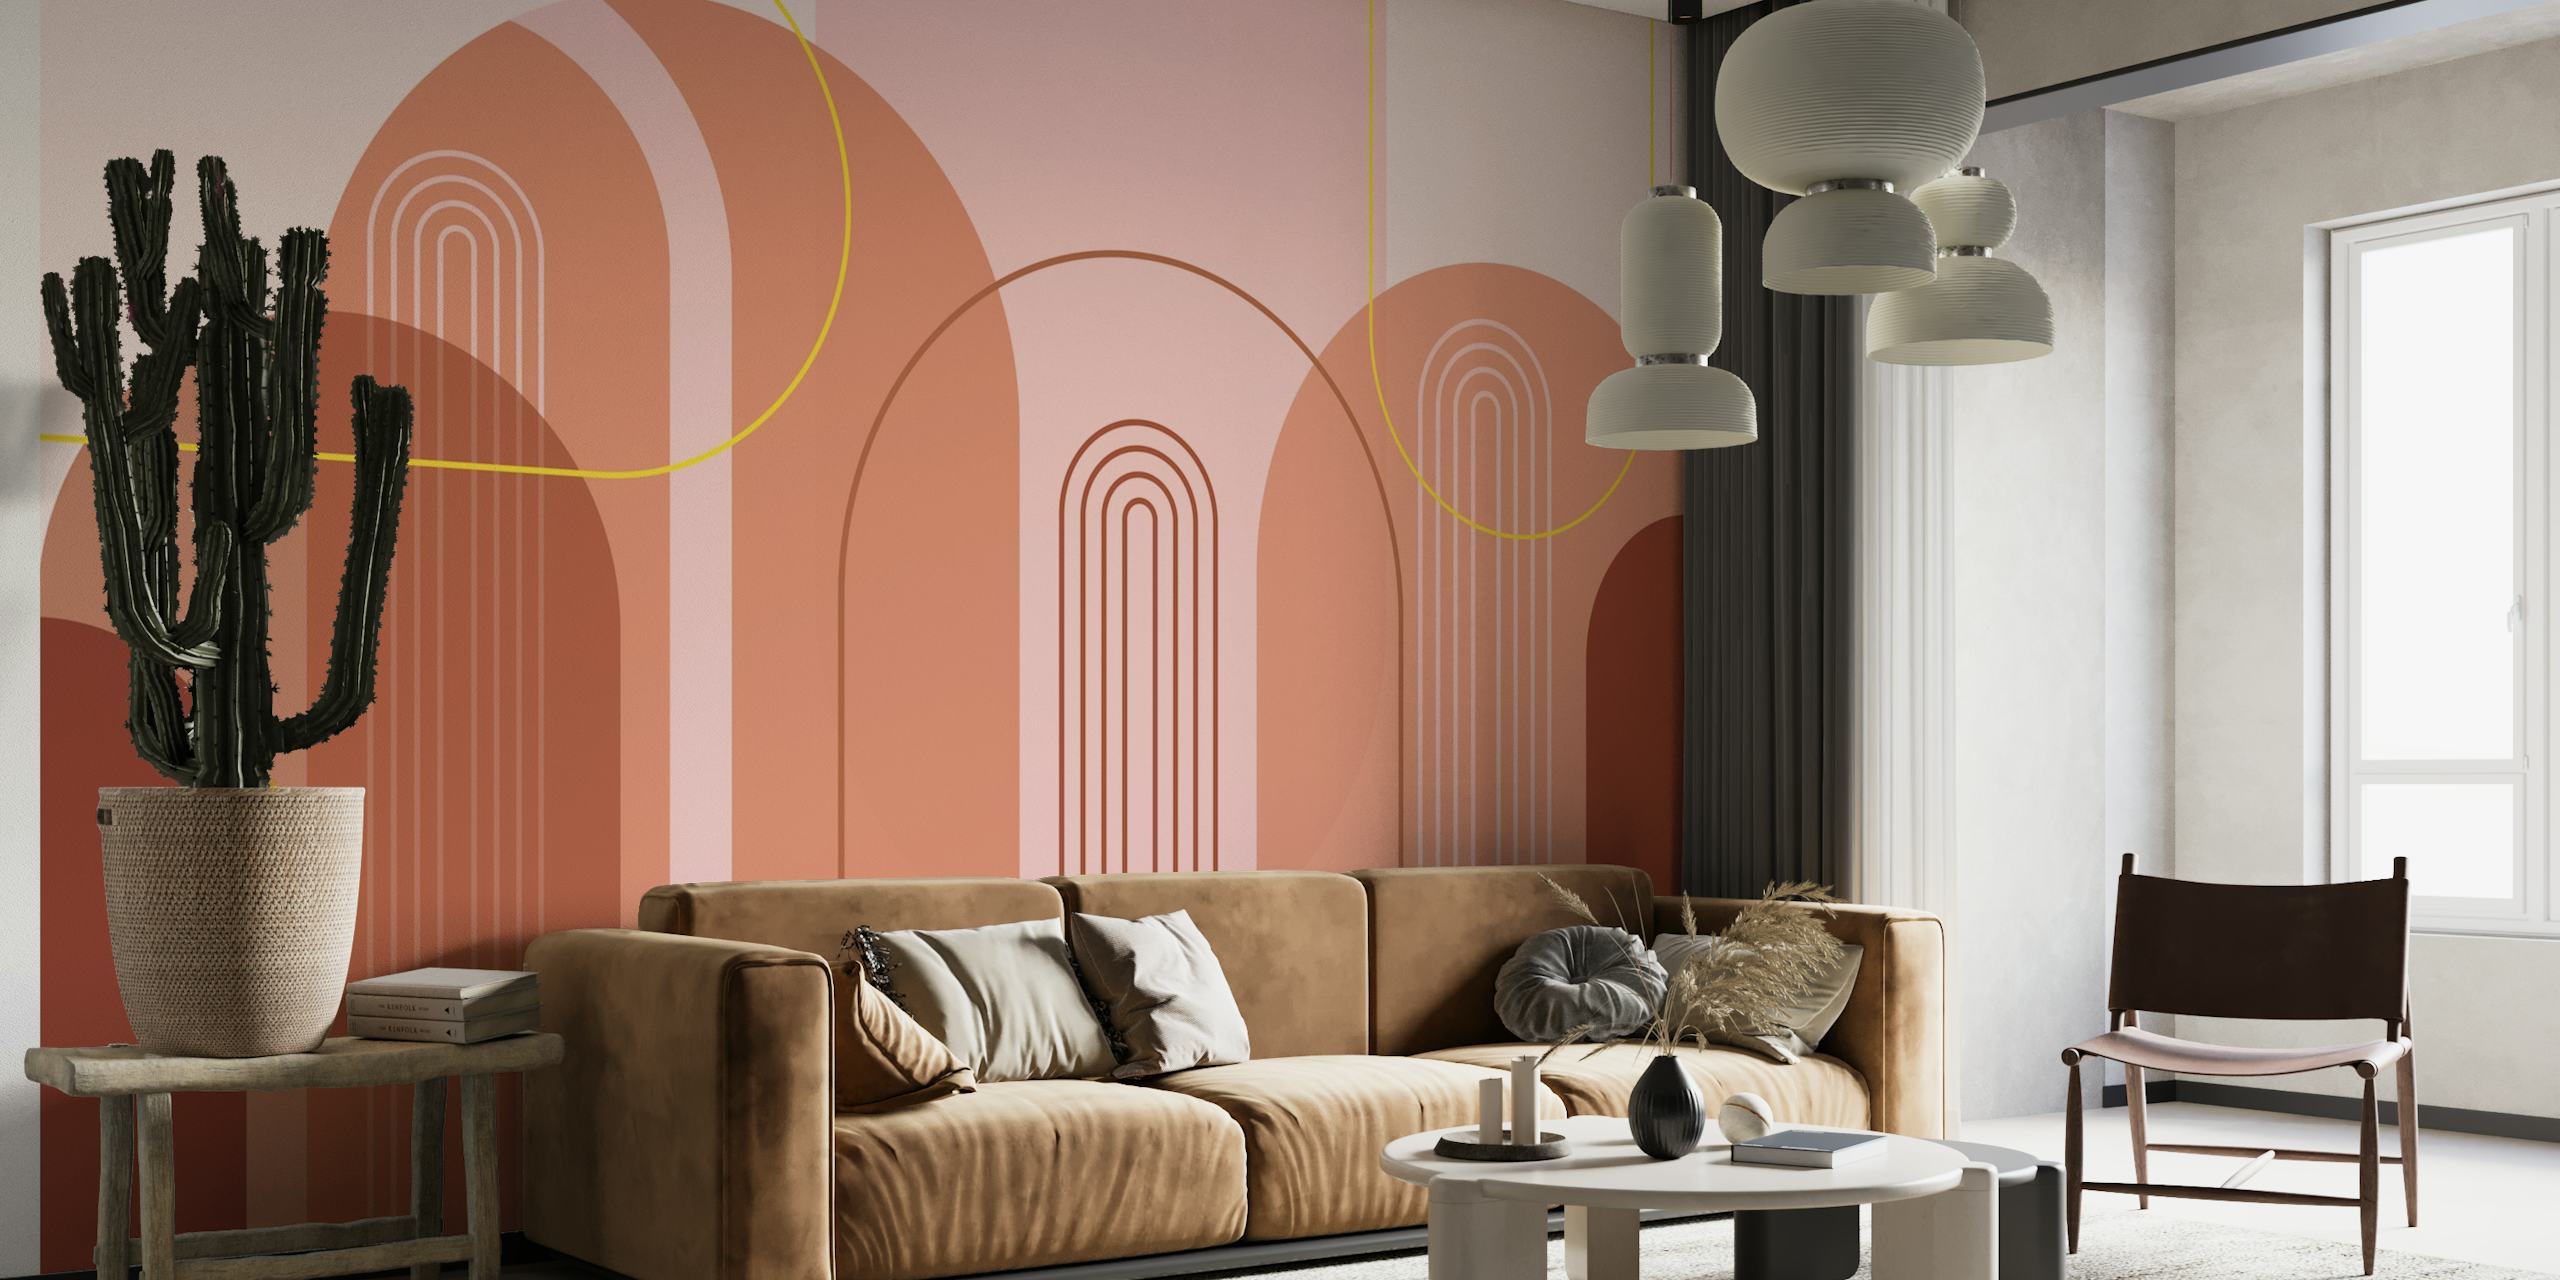 Abstract modern bogenbehang uit het midden van de eeuw met roze, beige, kastanjebruine en gouden kleuren